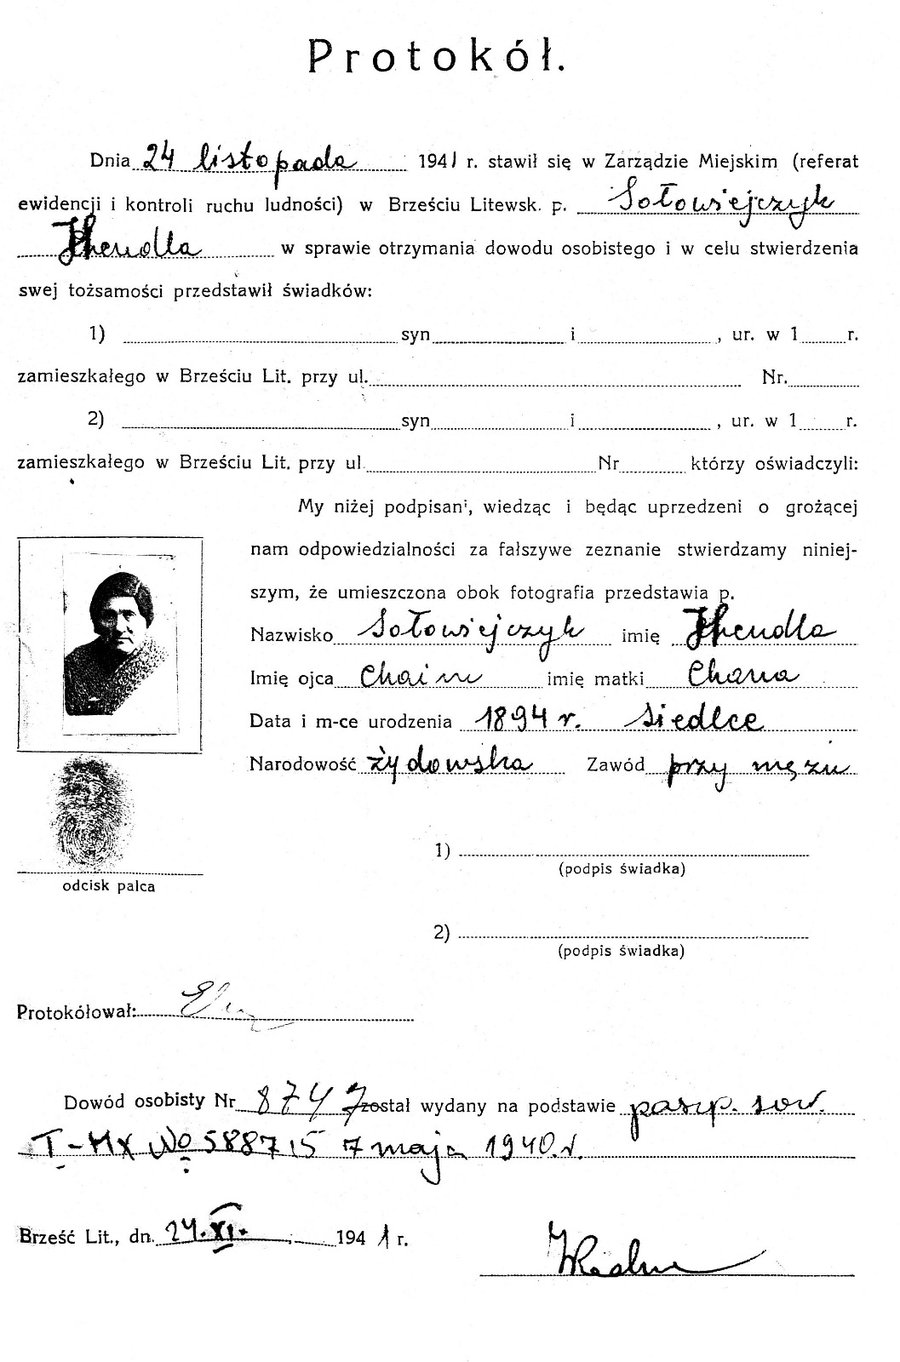 תעודת הגיטו של הרבנית הנדל &ndash; אשת מרן הגרי"ז סולובייצ'יק